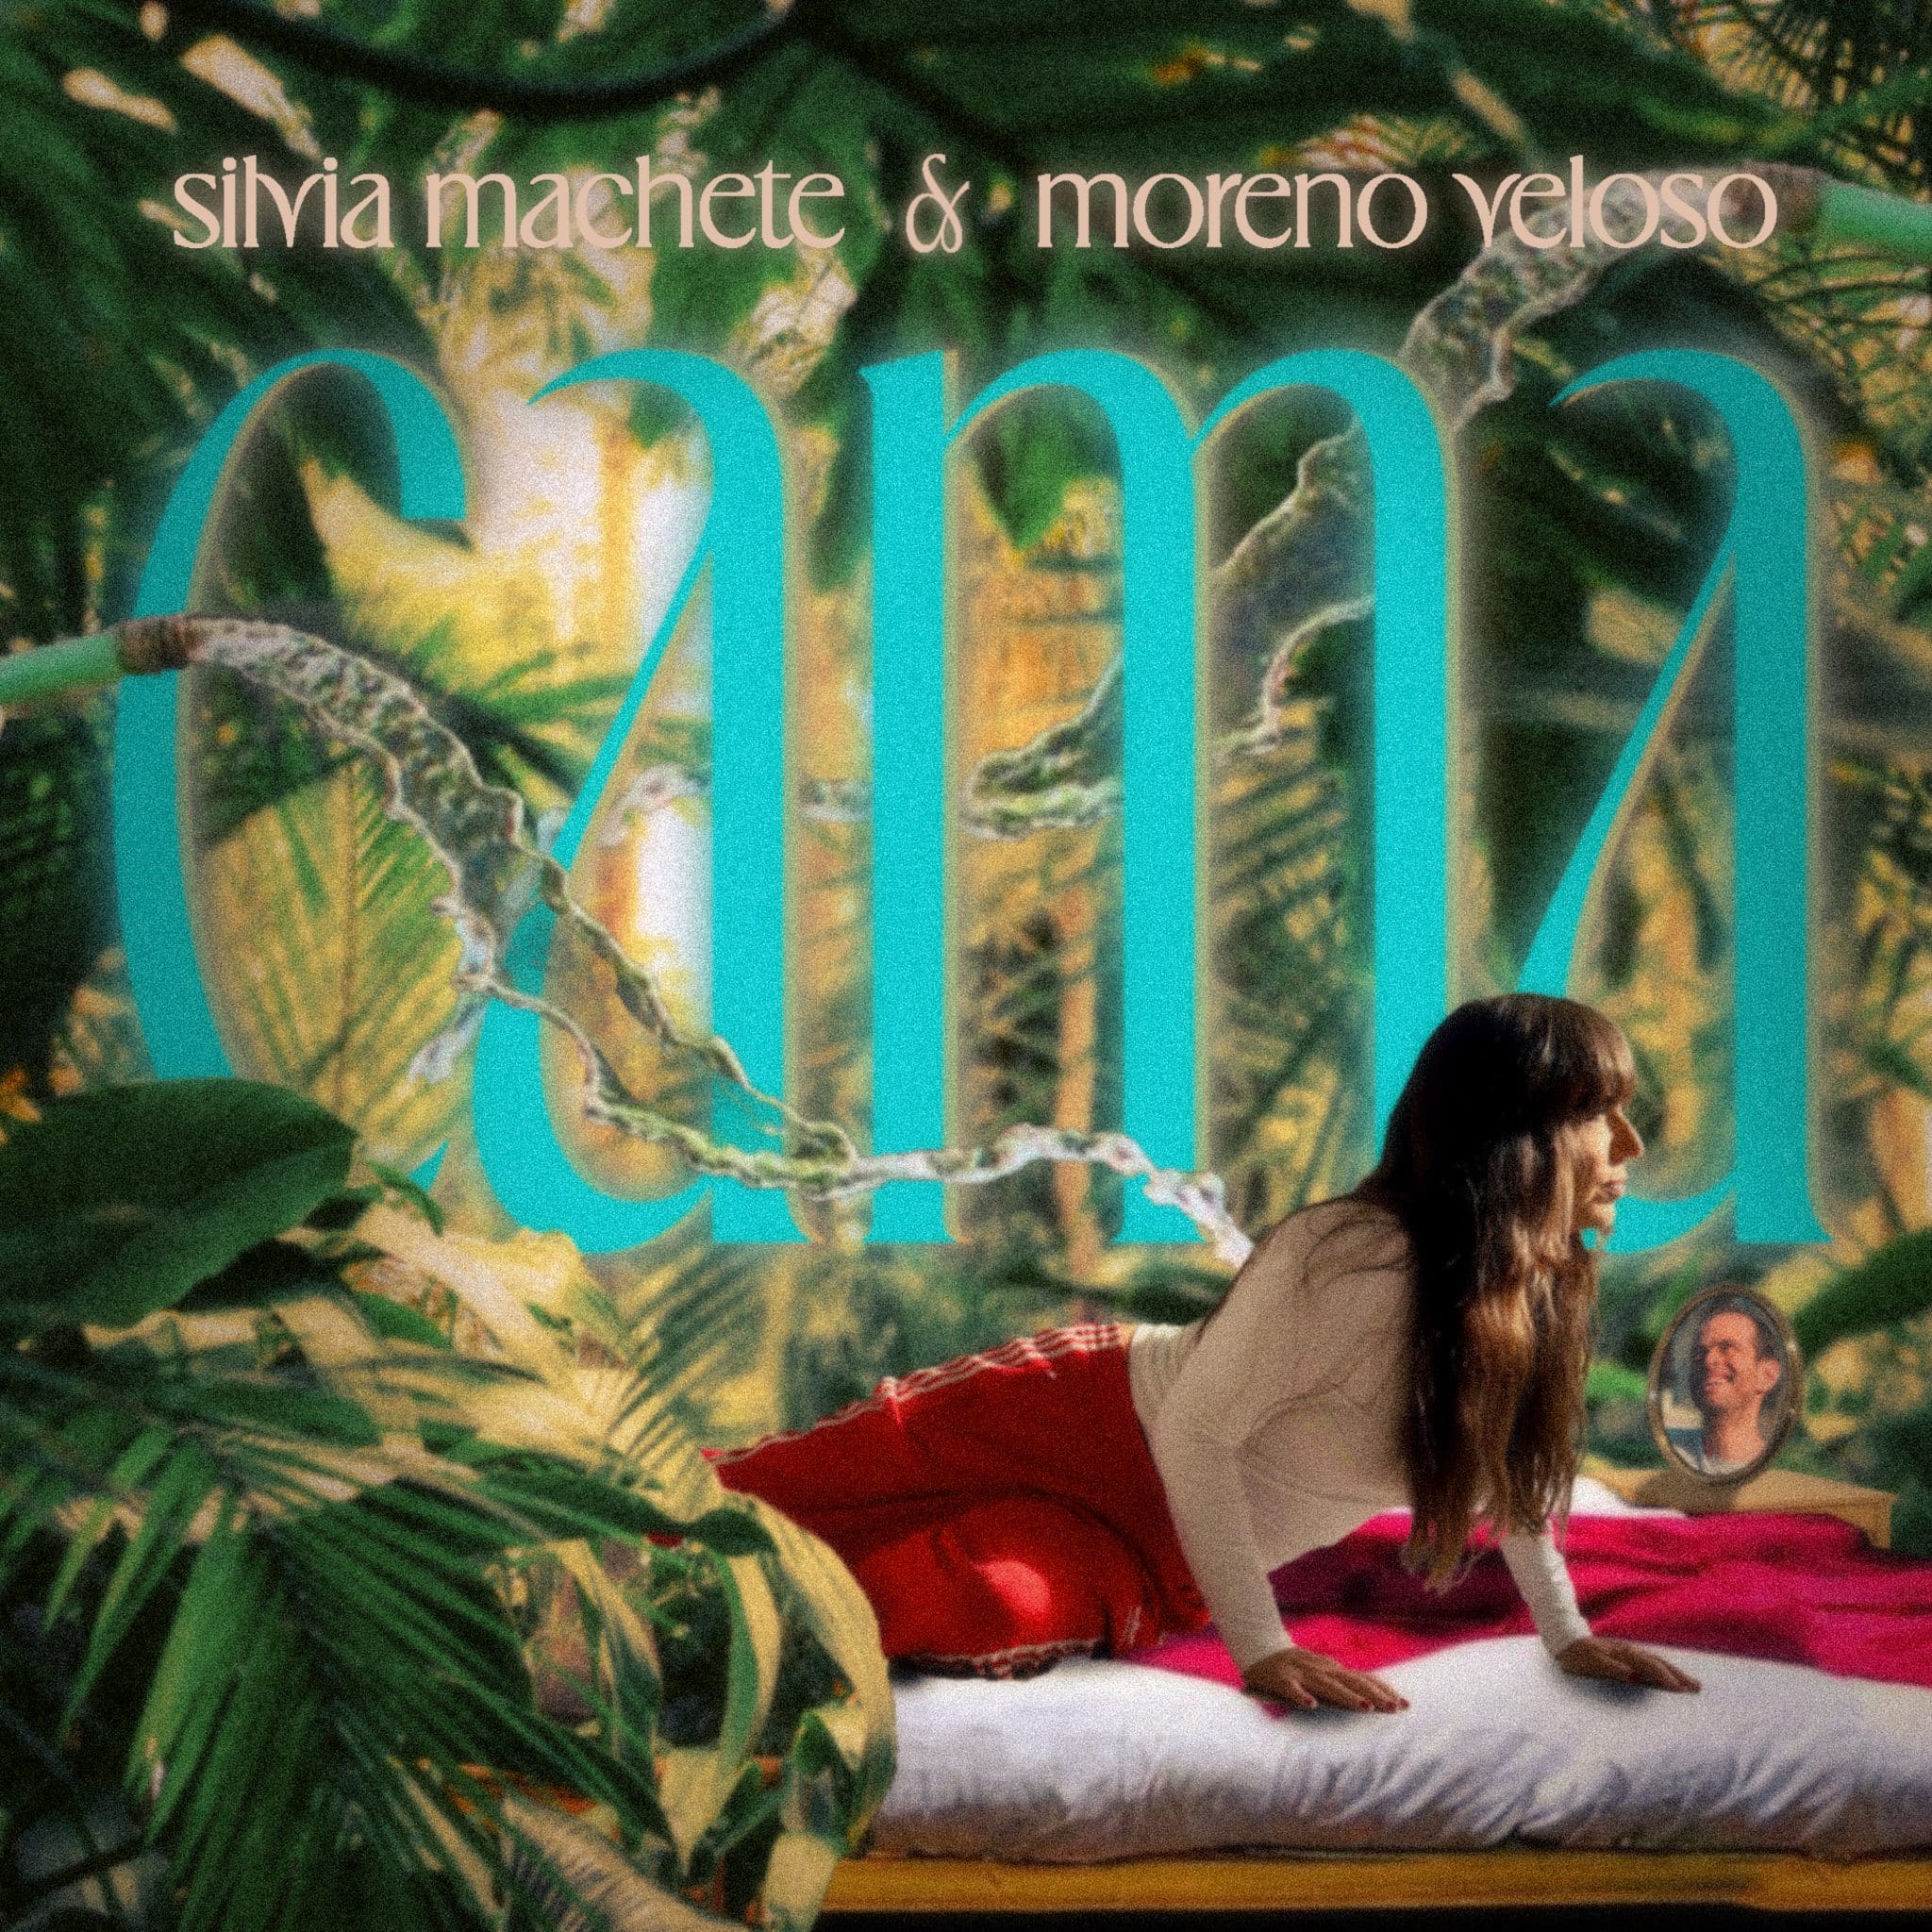 revistaprosaversoearte.com - Silvia Machete e Moreno Veloso juntos no single “Cama”